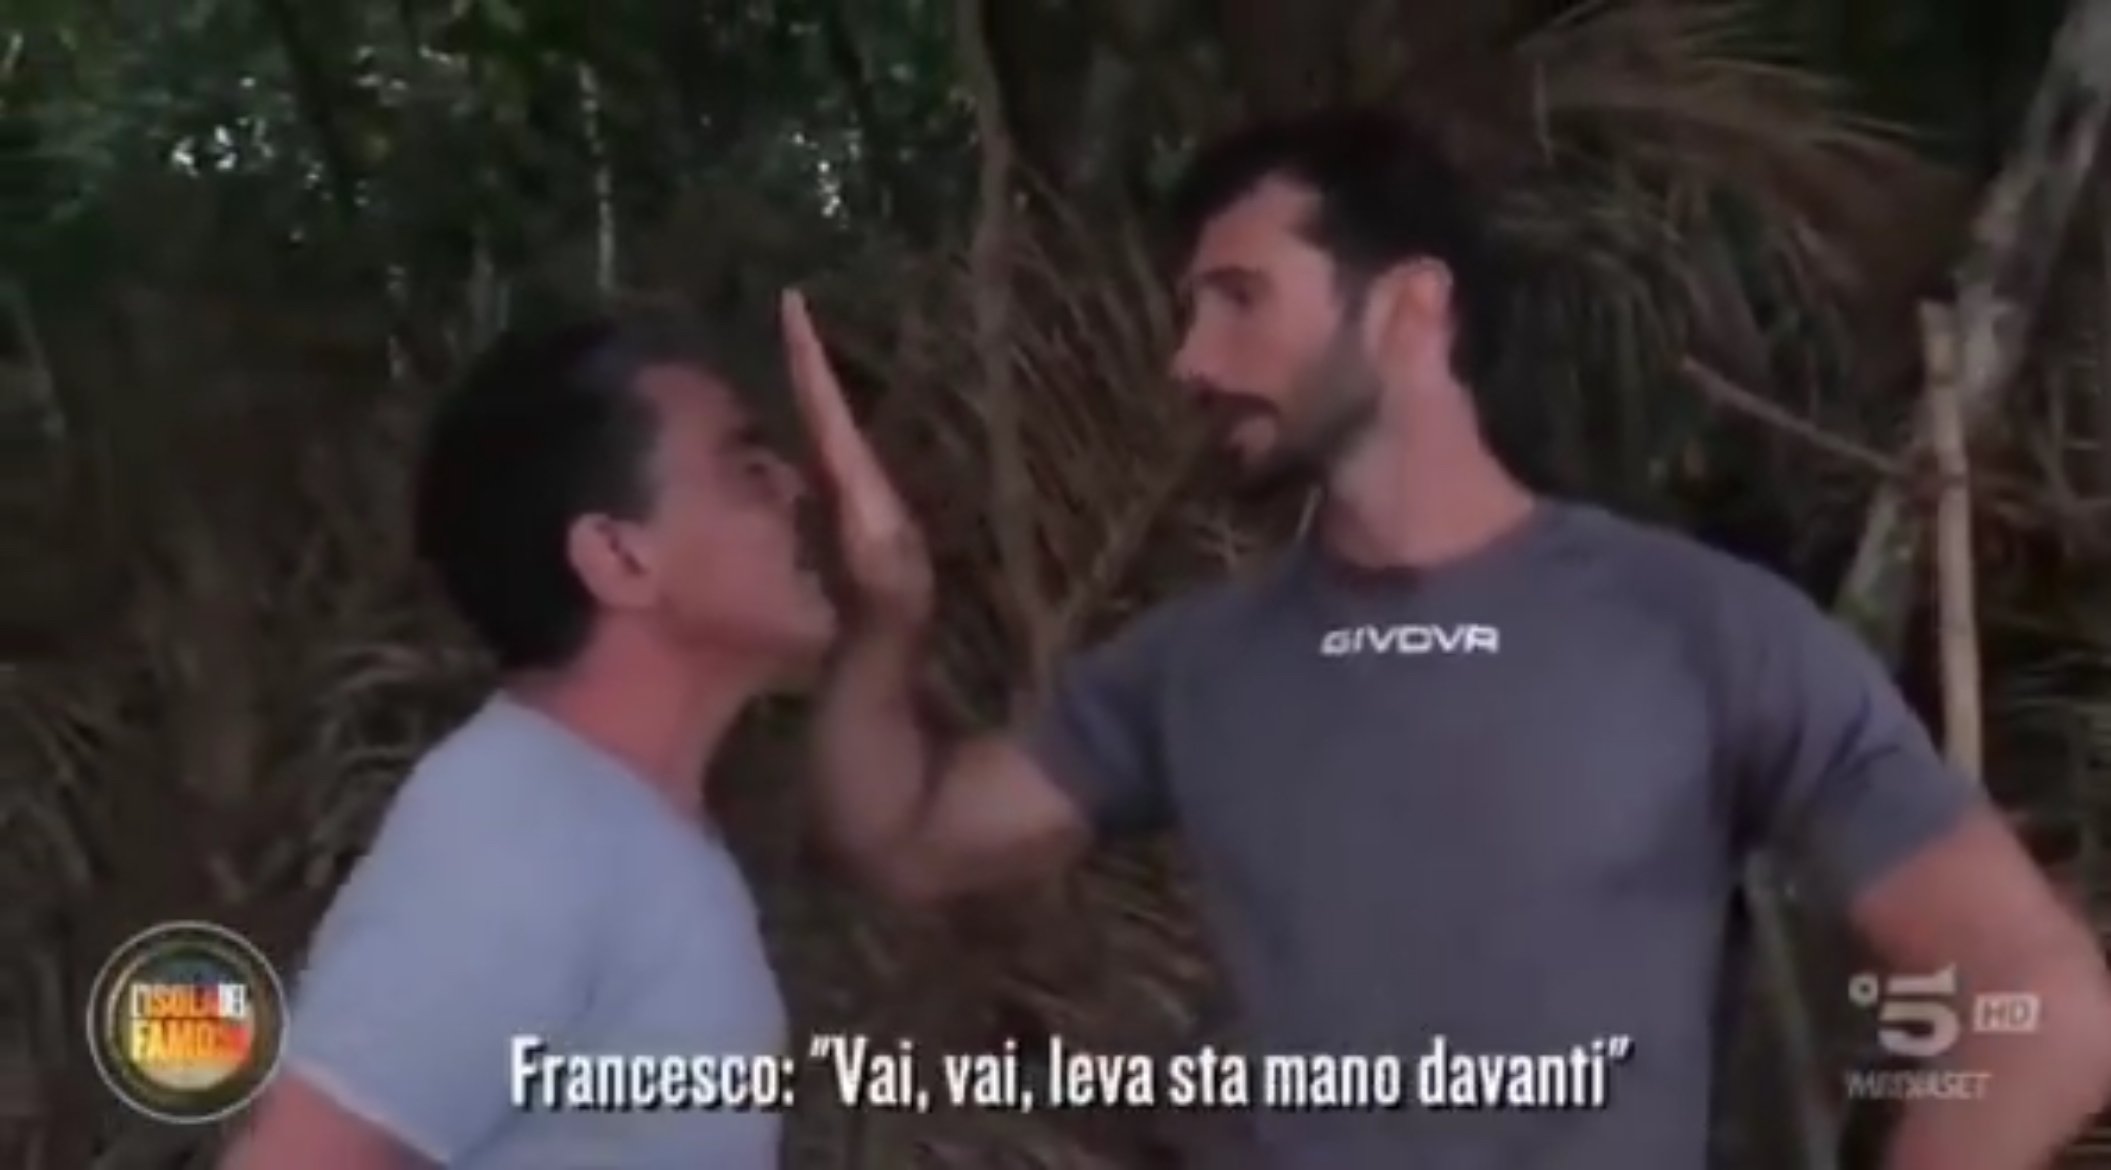 Isola dei Famosi, Francesco Benigno incastrato dai video. Ma l'attore replica: "Vi spu***no a tutti"